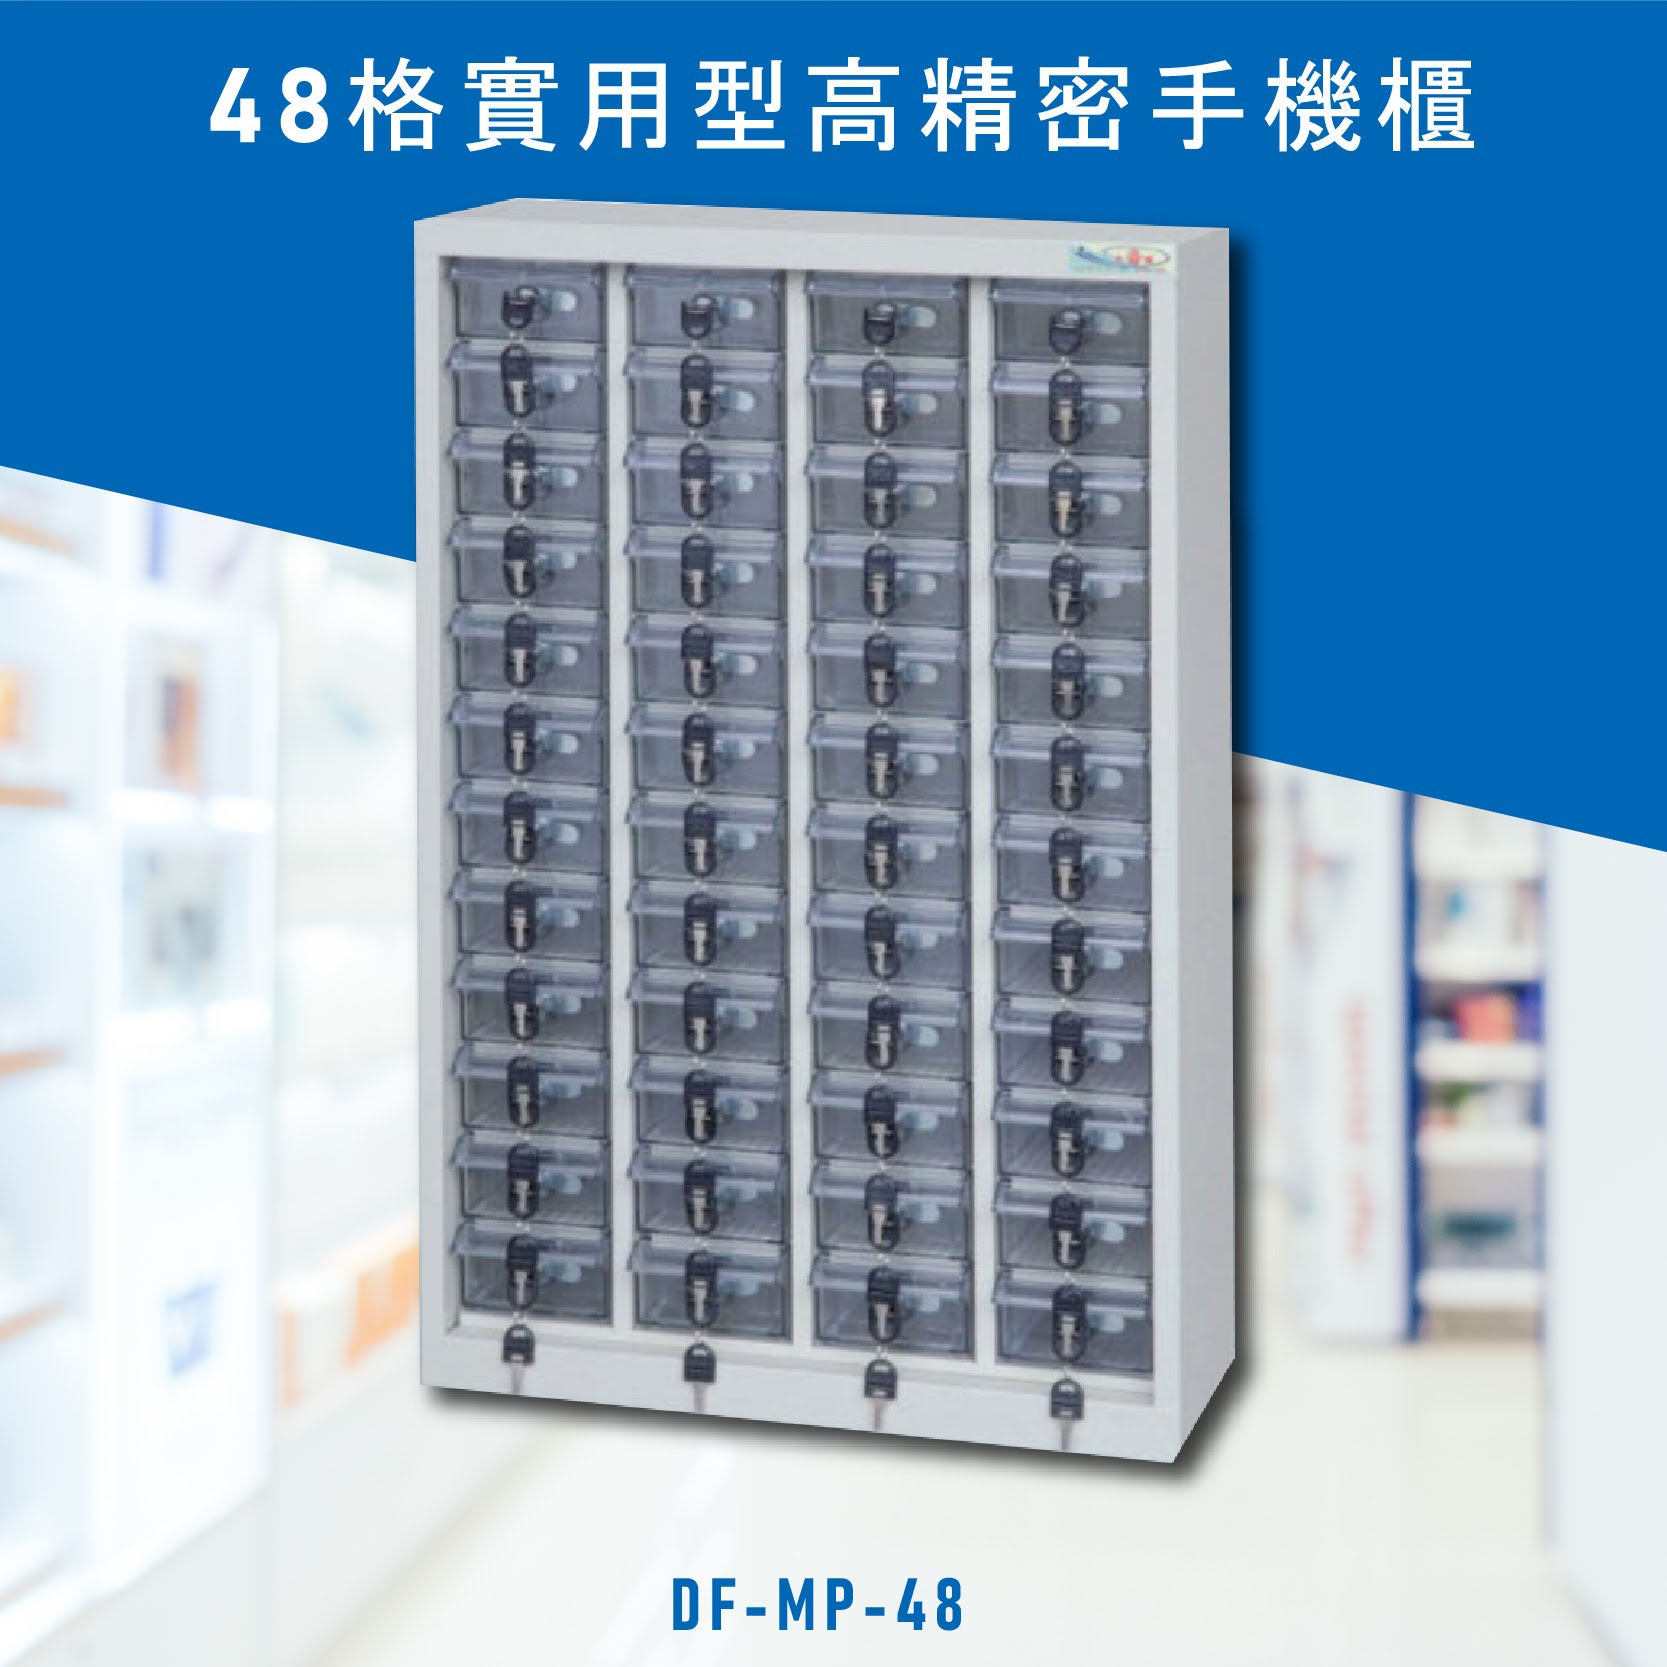 台灣NO.1 大富 實用型高精密零件櫃 DF-MP-48 收納櫃 置物櫃 公文櫃 專利設計 收納櫃 手機櫃